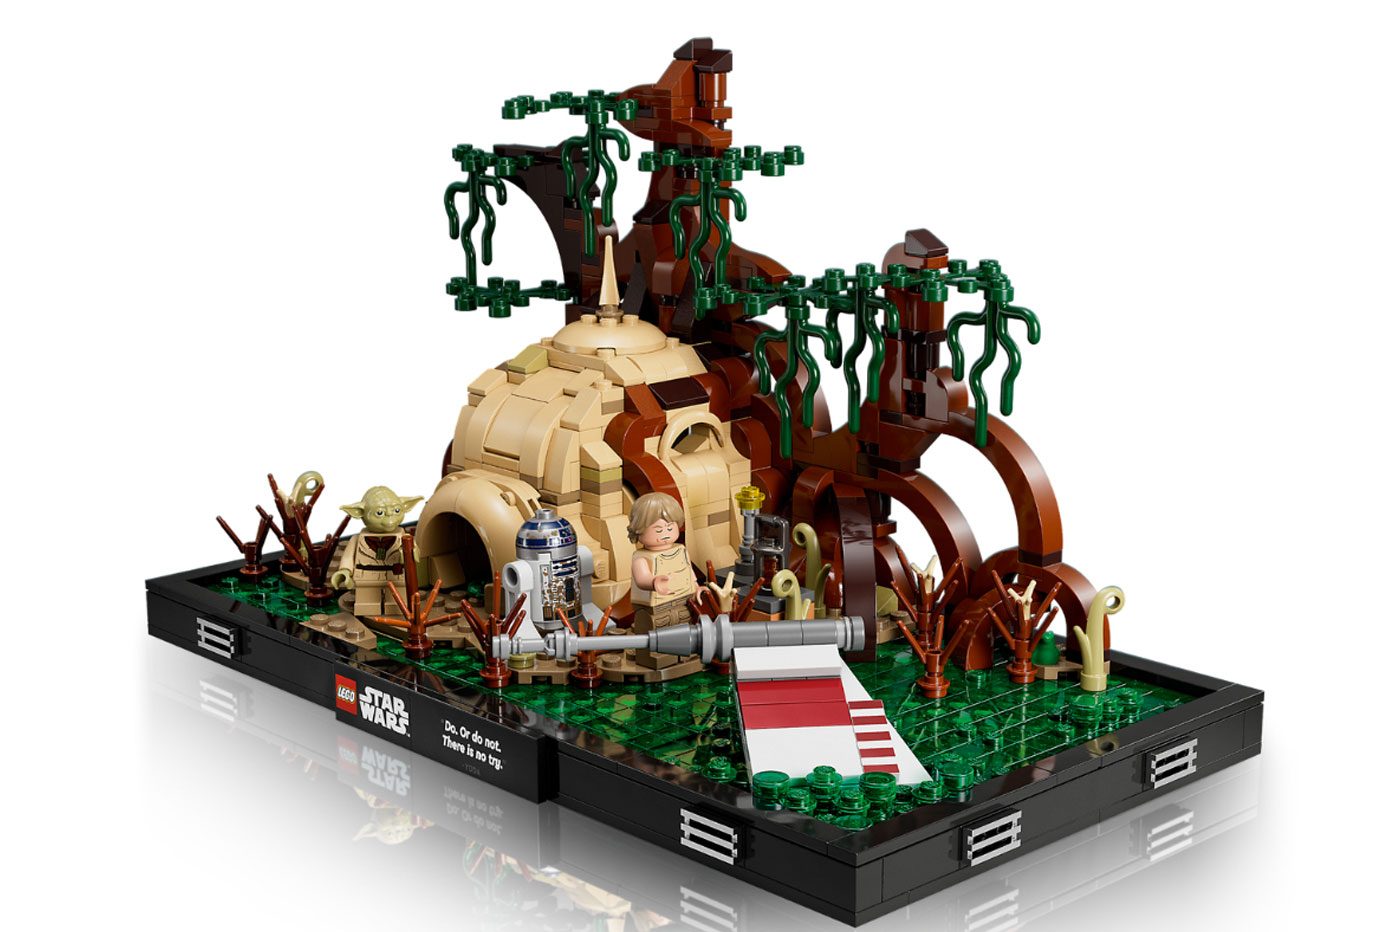 Bon plan Lego Star Wars : le Faucon Millenium en réduction